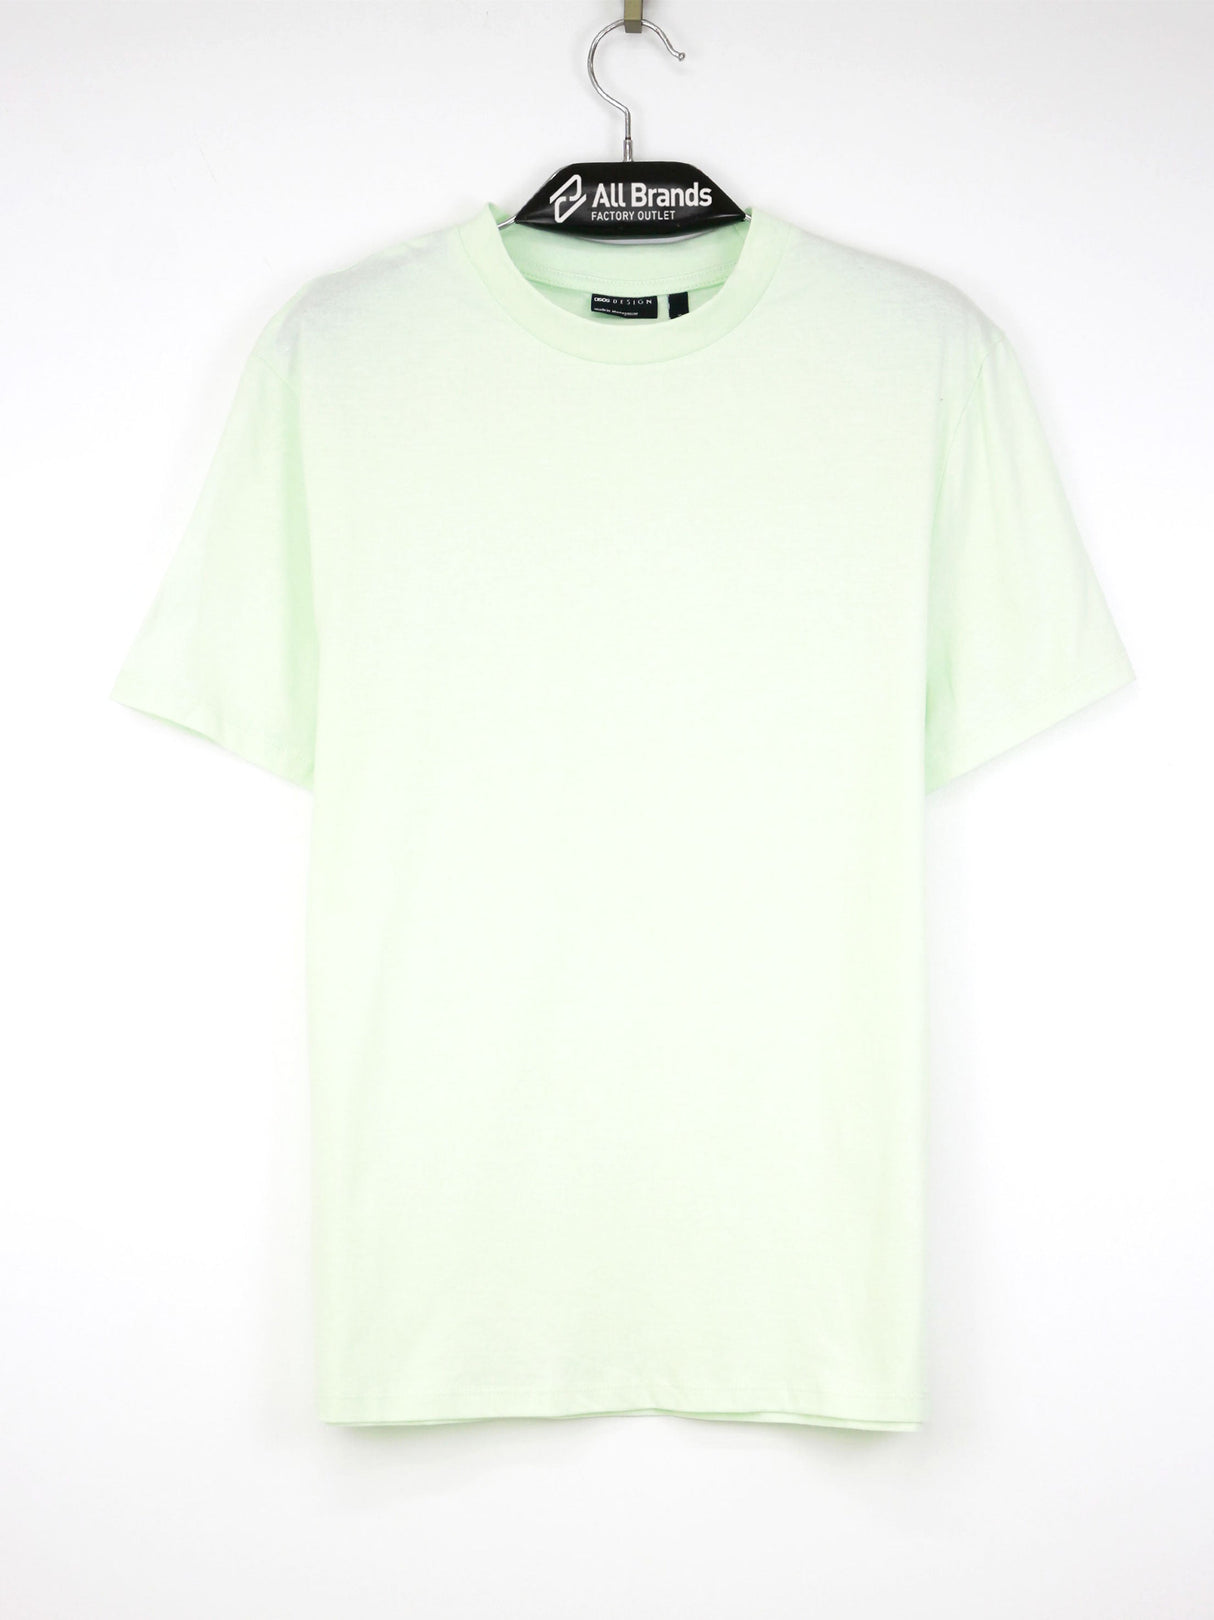 Image for Men's Plain Solid T-Shirt,Light Green